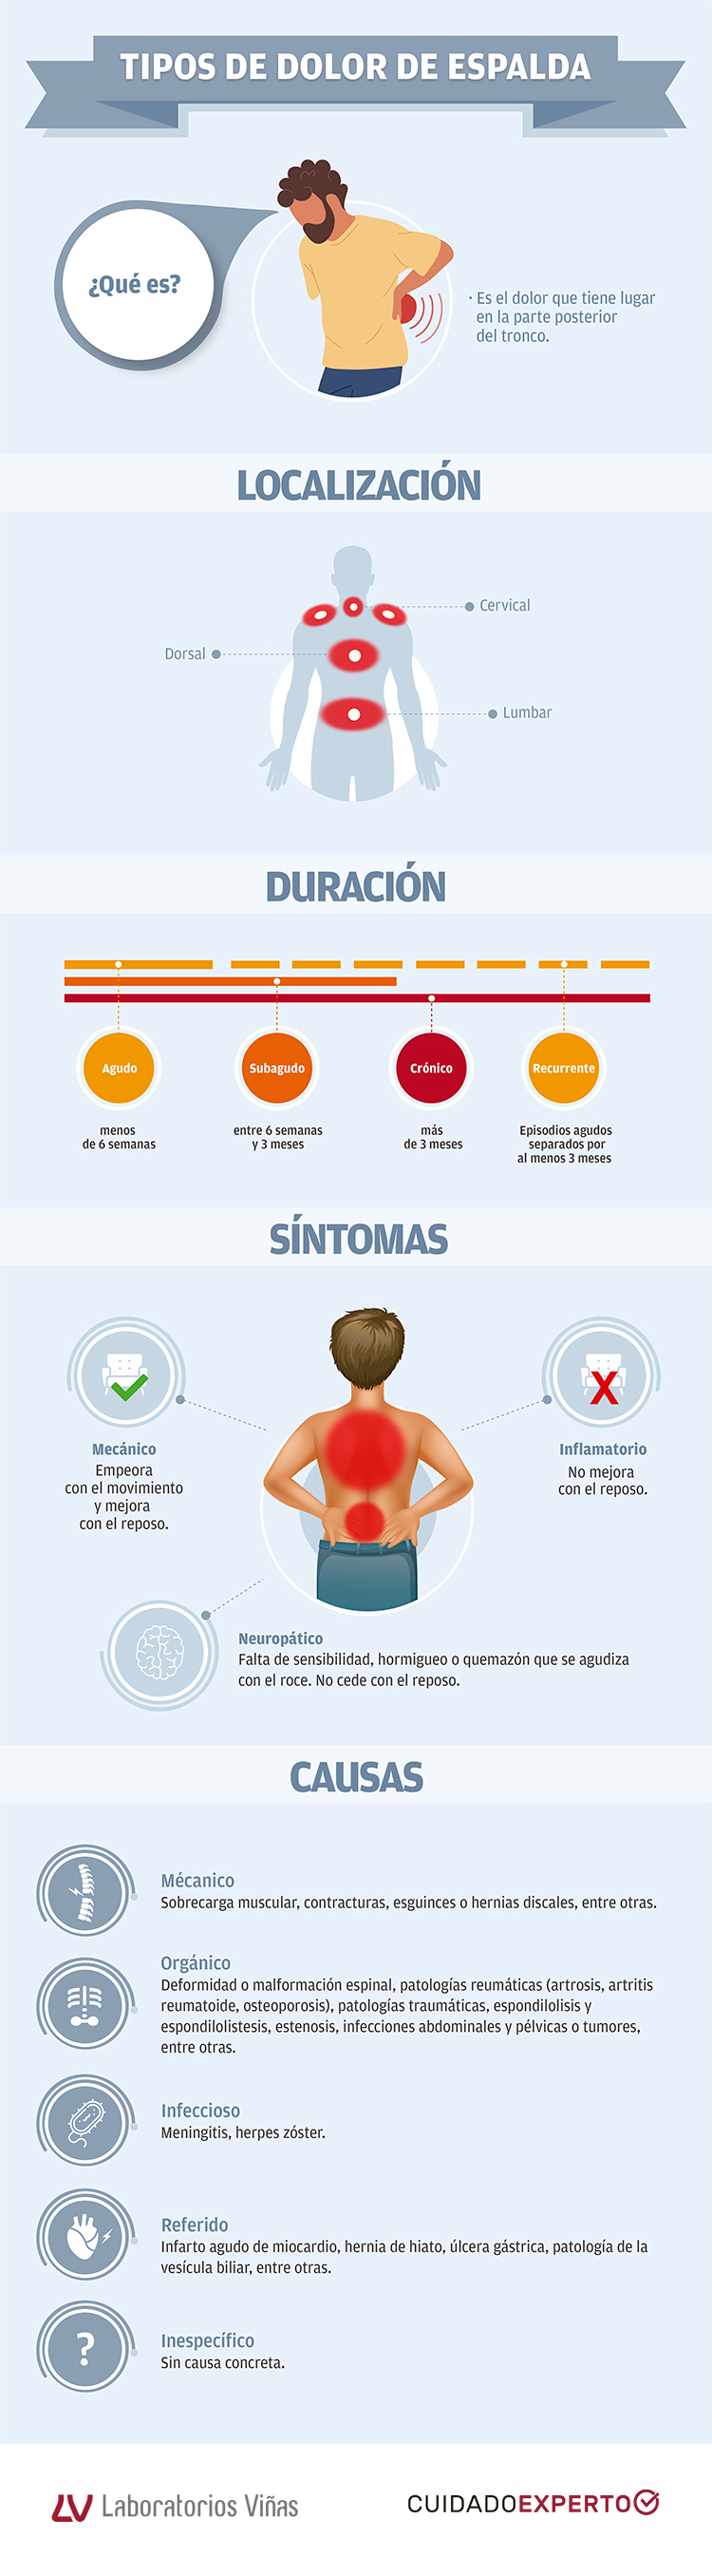 Dolor de espalda: Causas y tratamiento - Centro Médico OSI